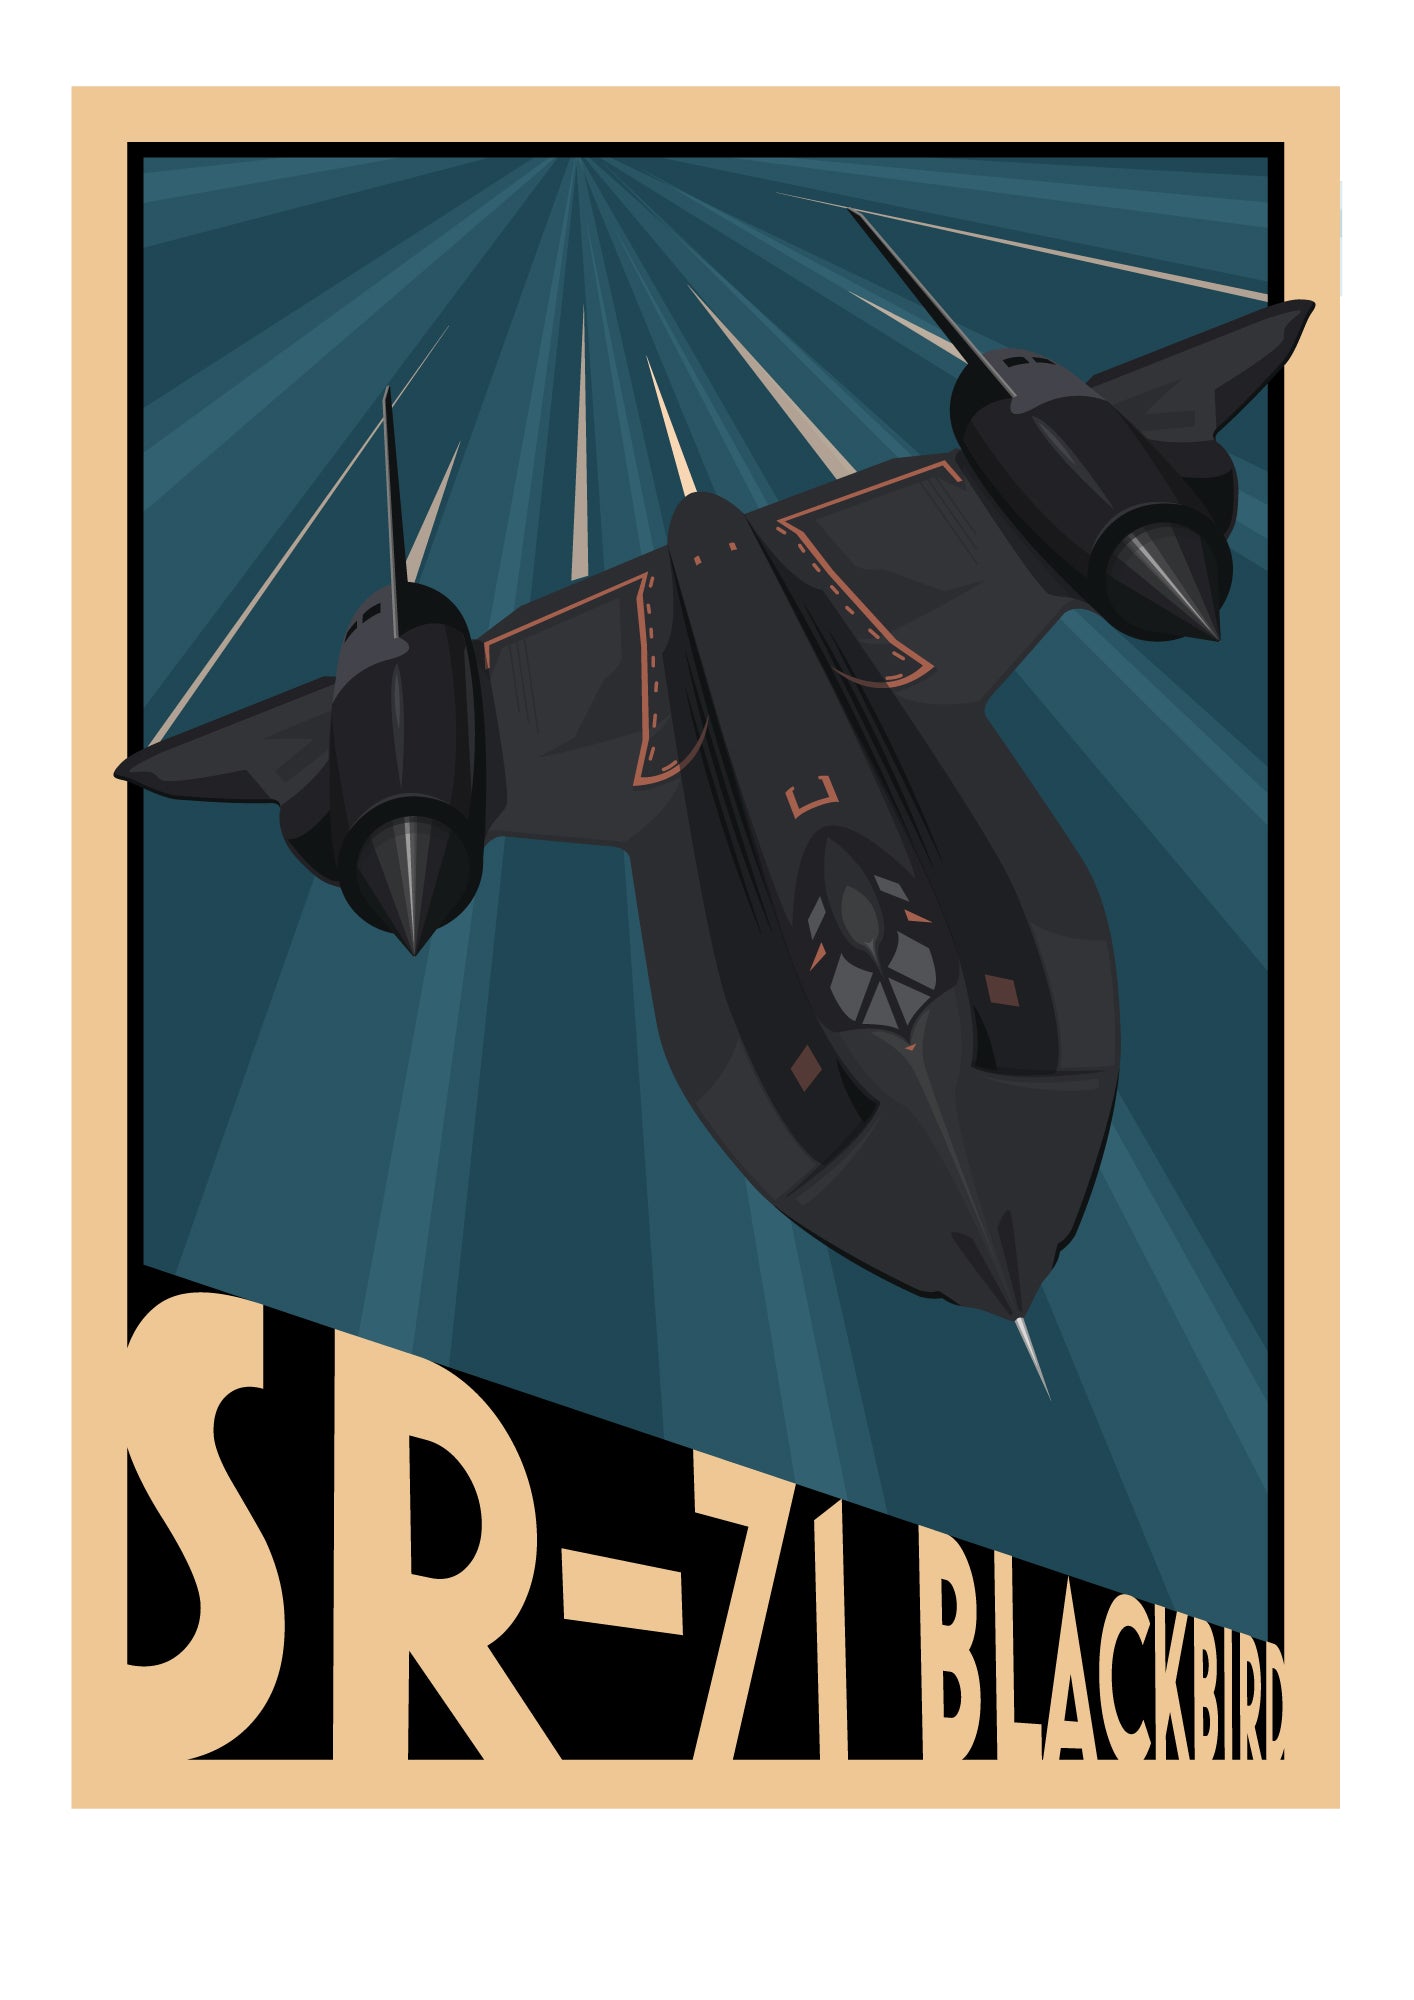 SR-71 Blackbird Art Print